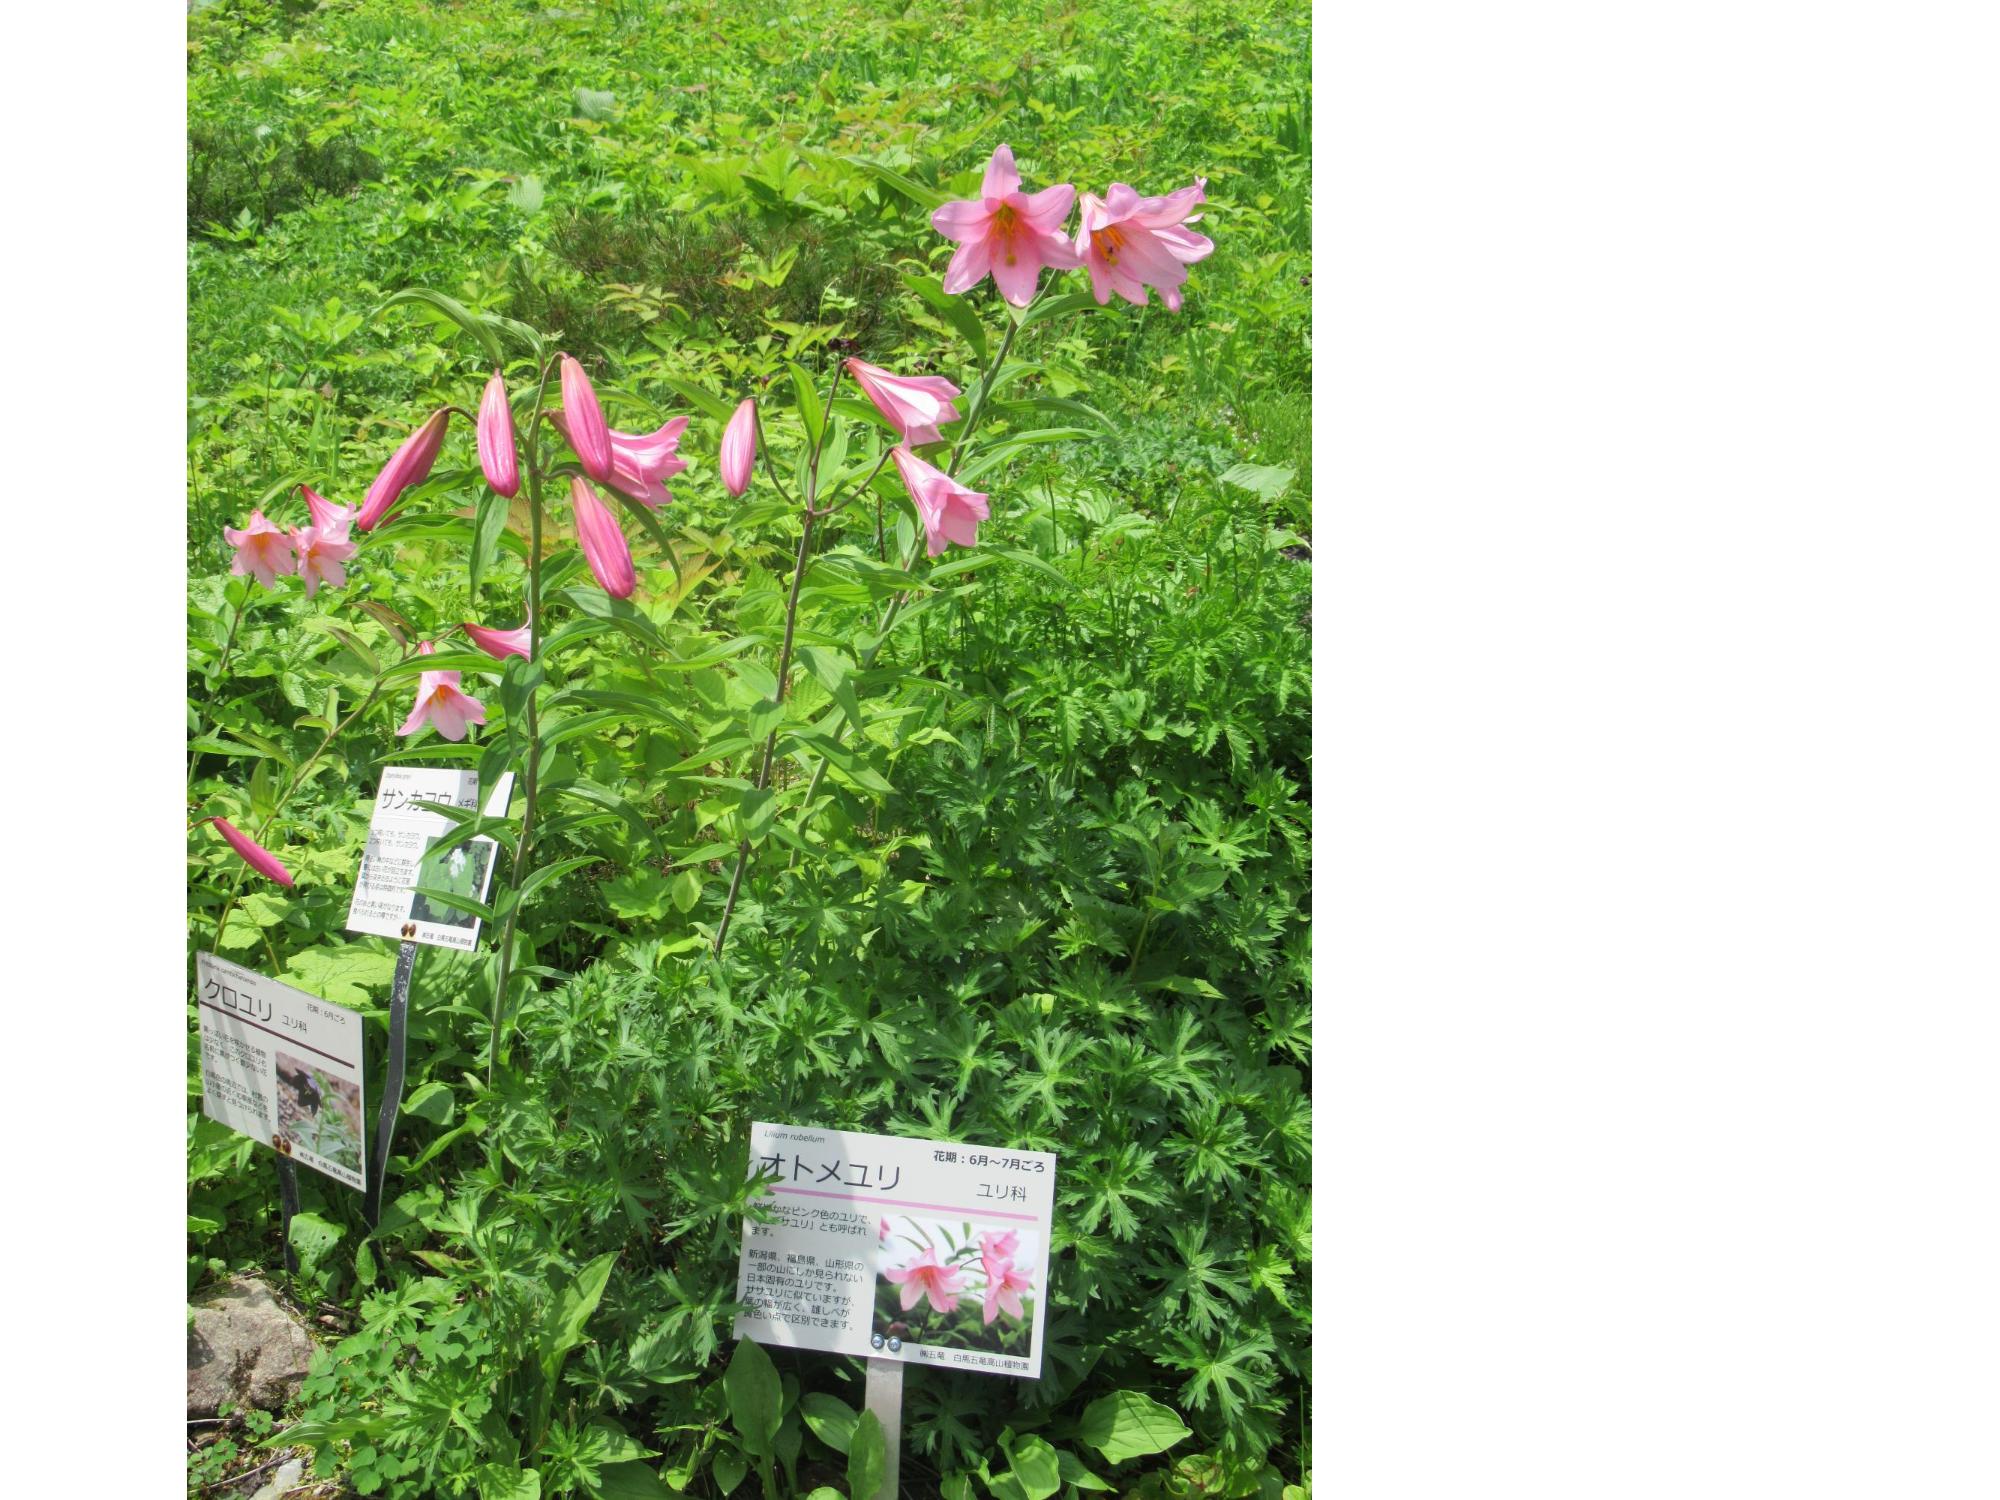 ピンク色のオトメユリが咲いている写真